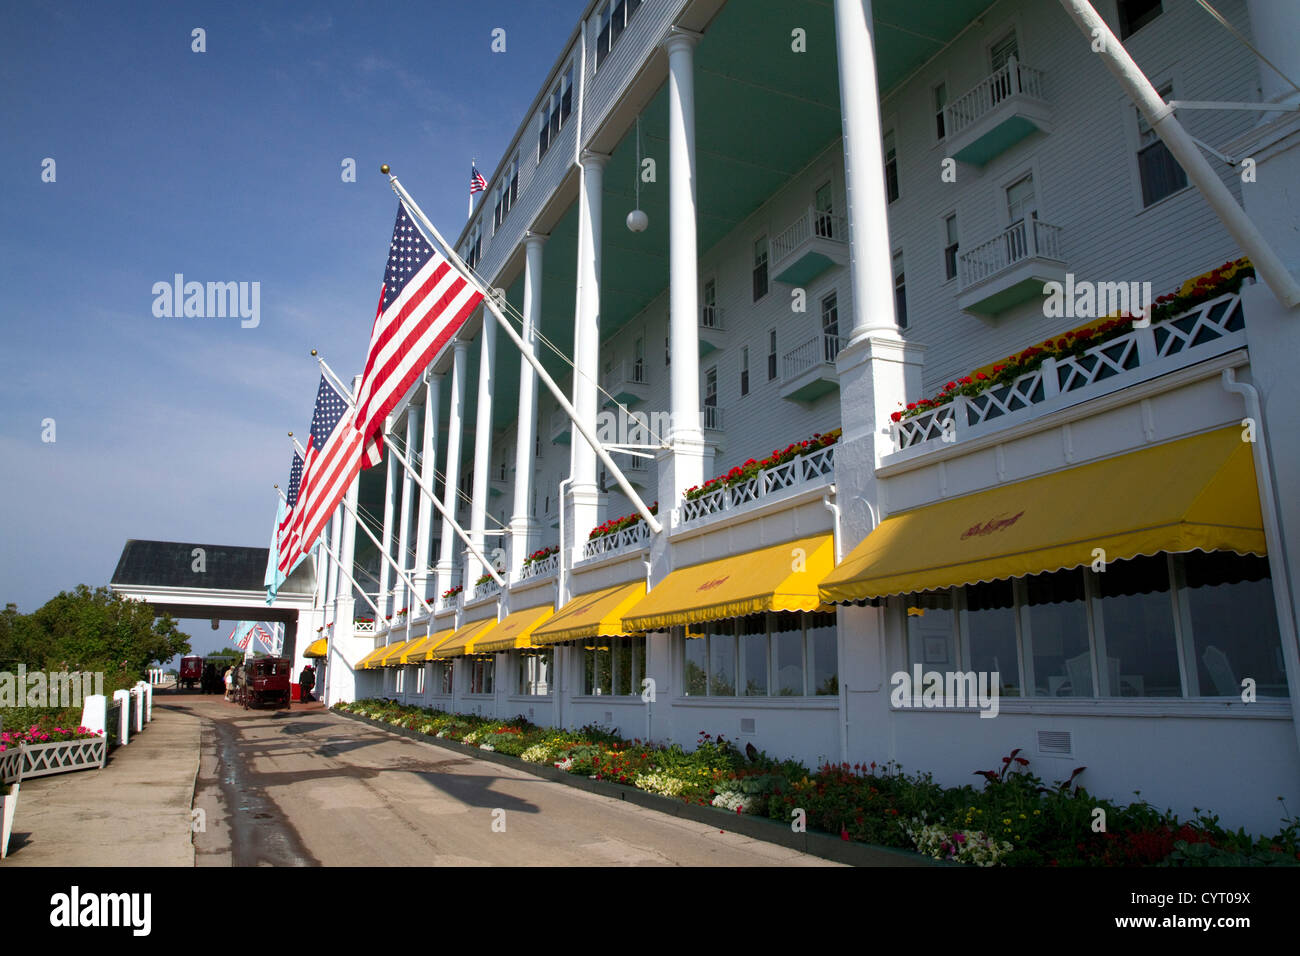 Le Grand Hôtel sur l'île Mackinac situé dans le lac Huron, Michigan, USA. Banque D'Images